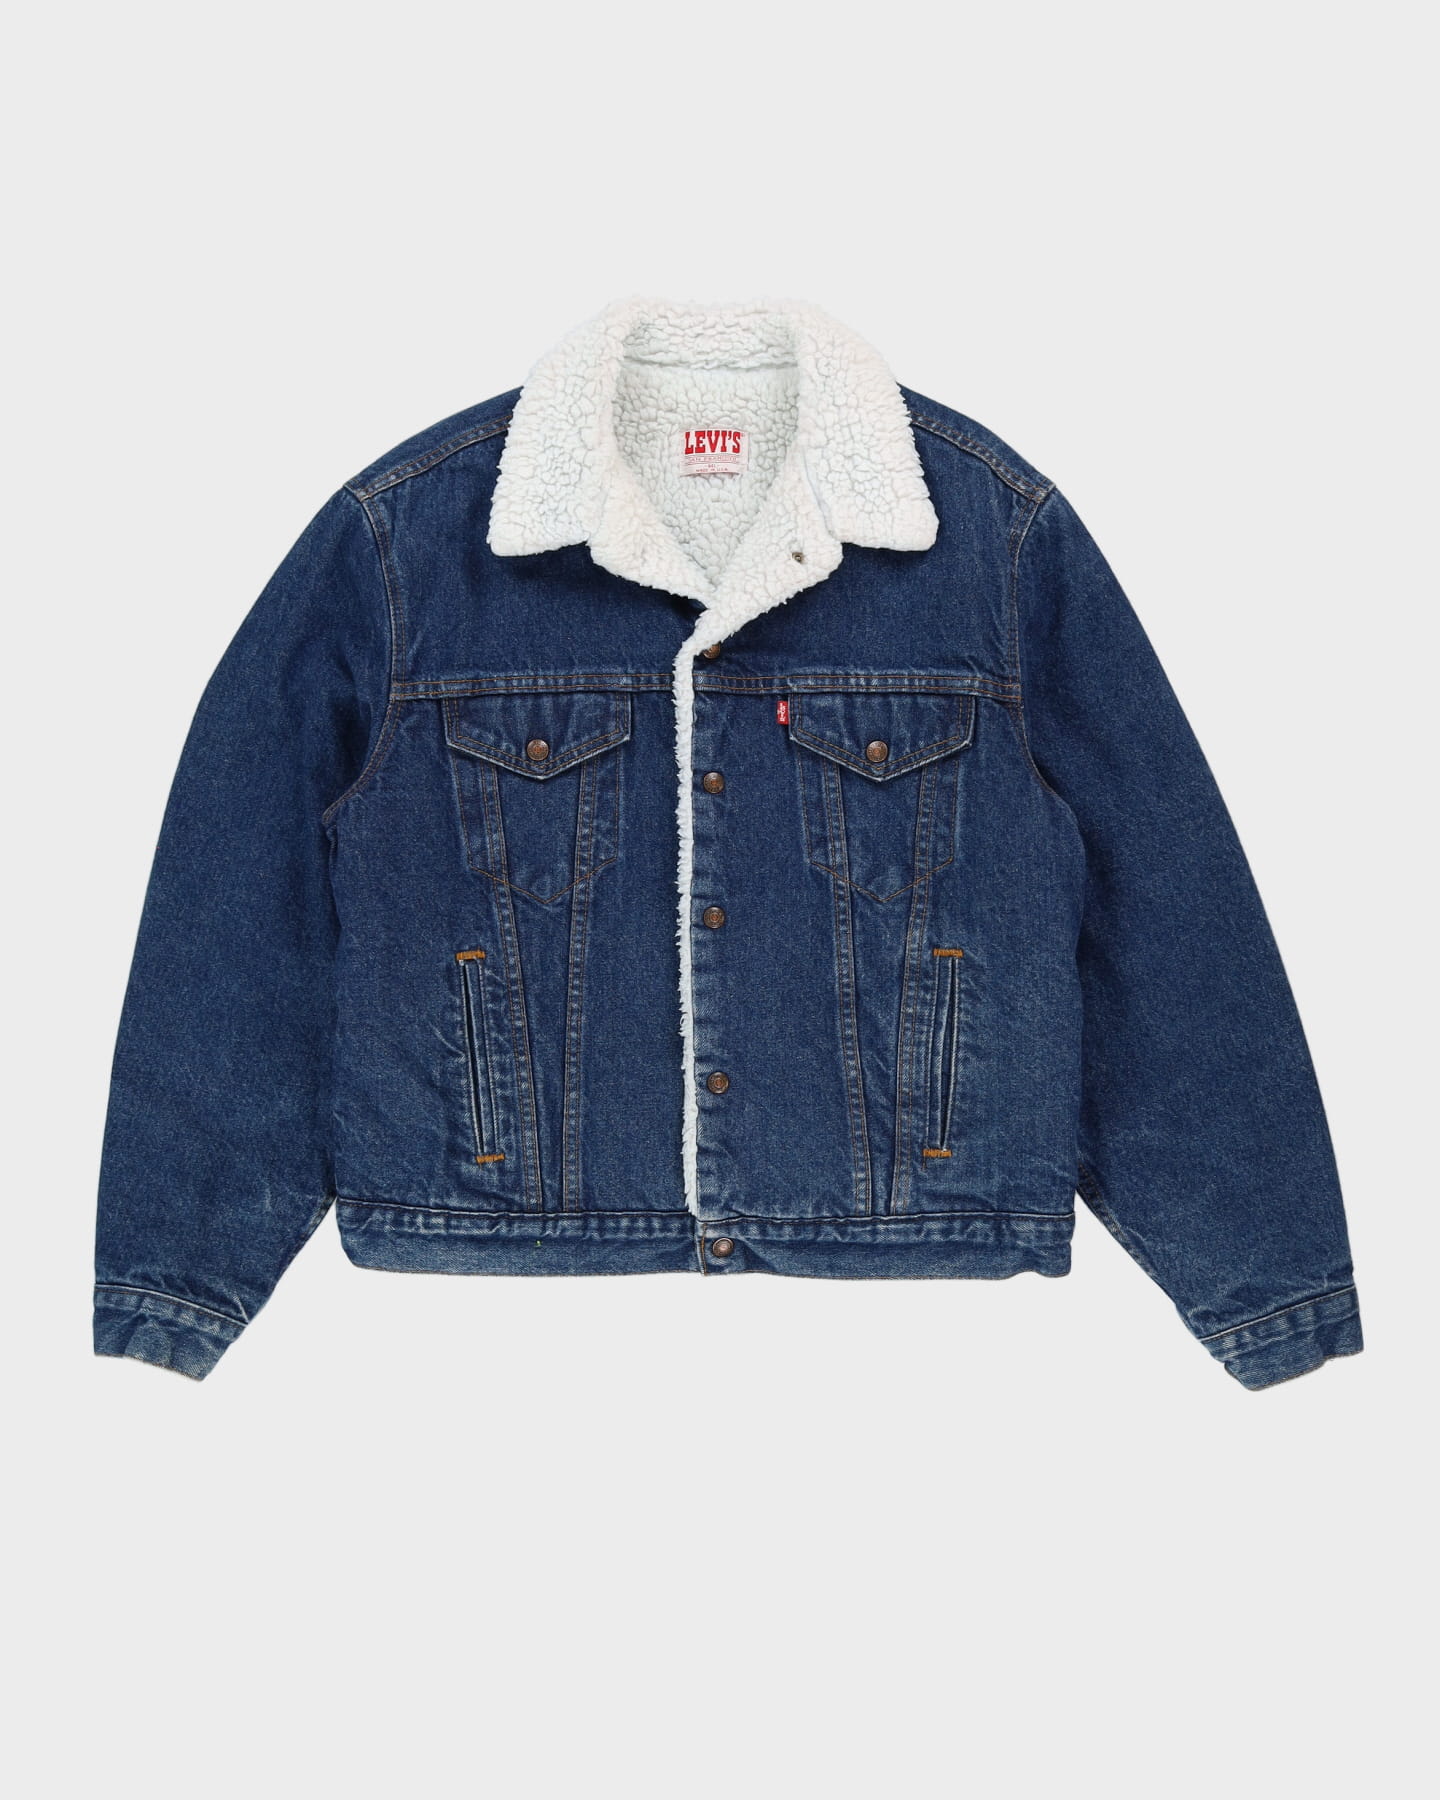 Vintage 80s Levi's Fleece-Lined Dark Wash Blue Denim Jacket - L